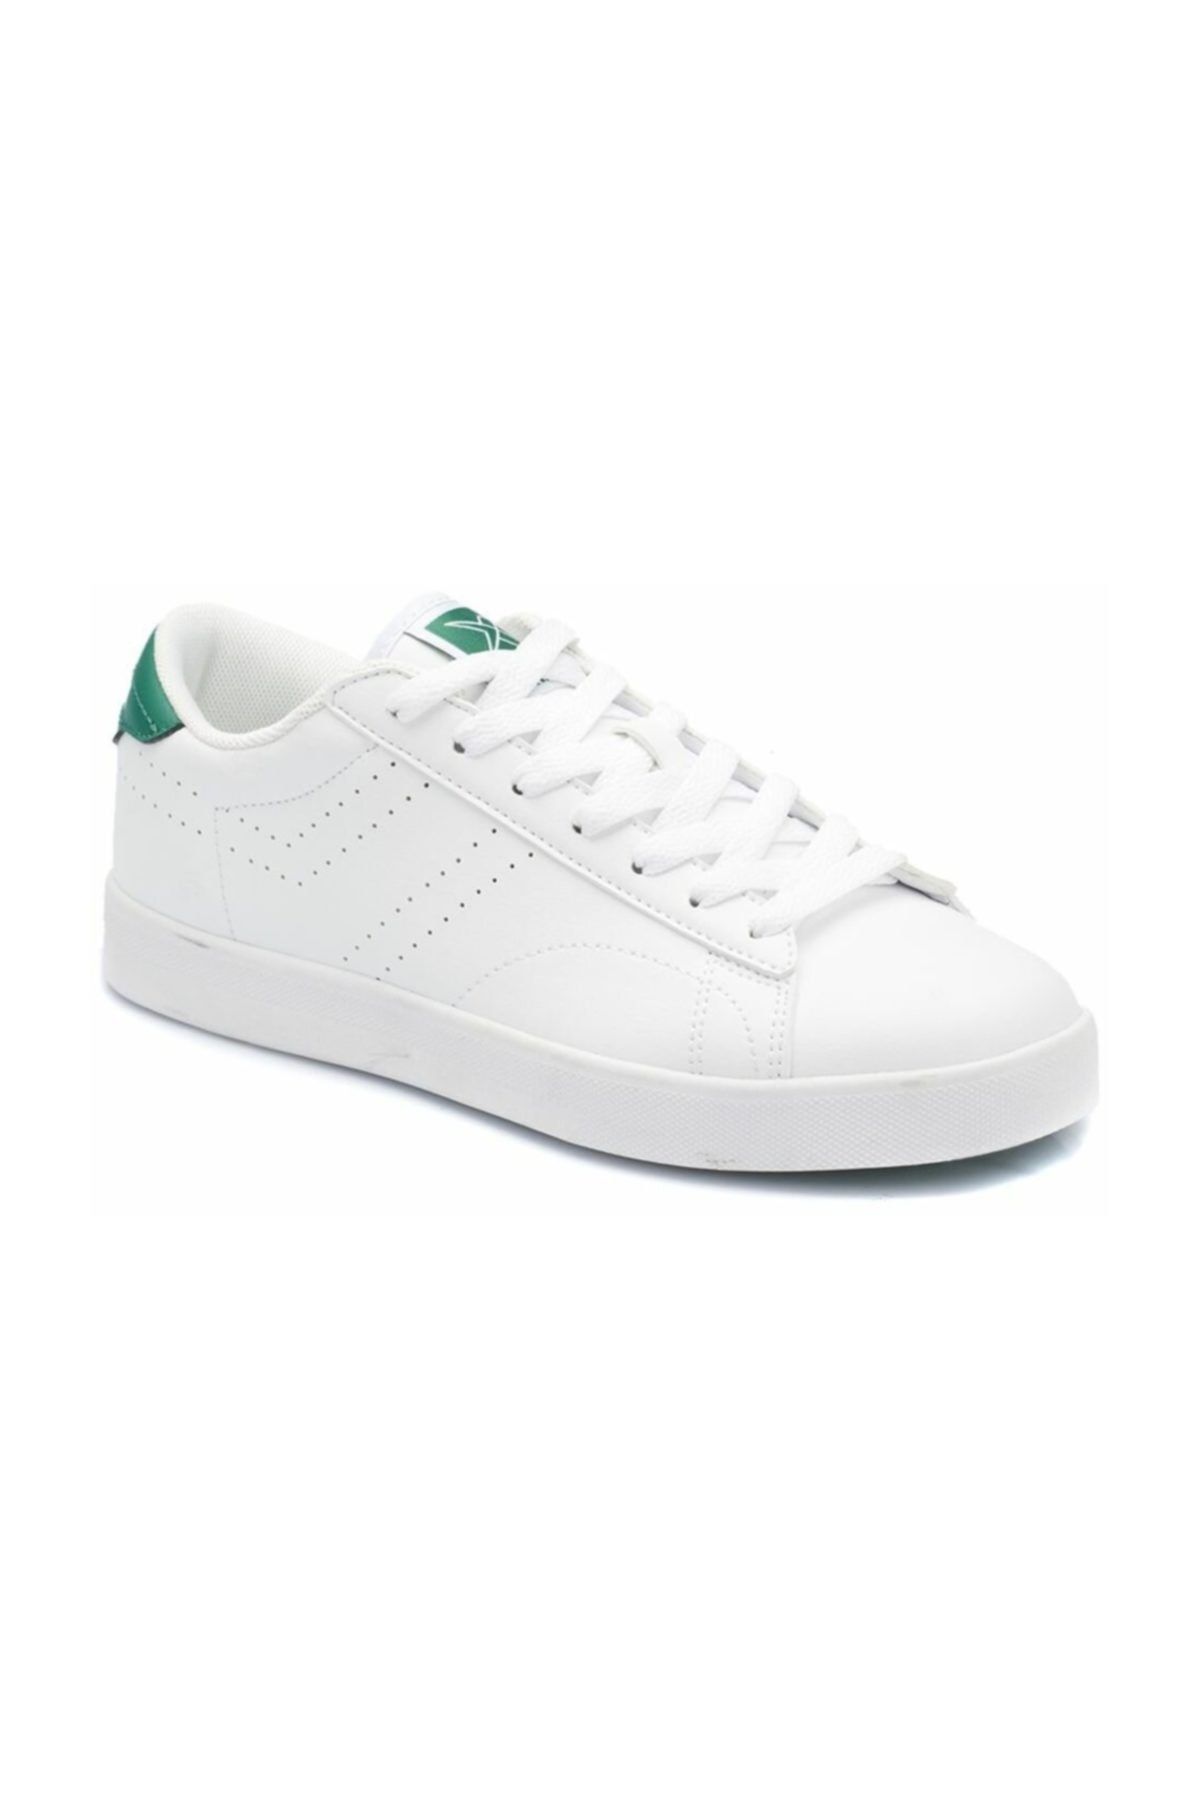 Kinetix SUPREM W Beyaz Kadın Sneaker Ayakkabı 100323297